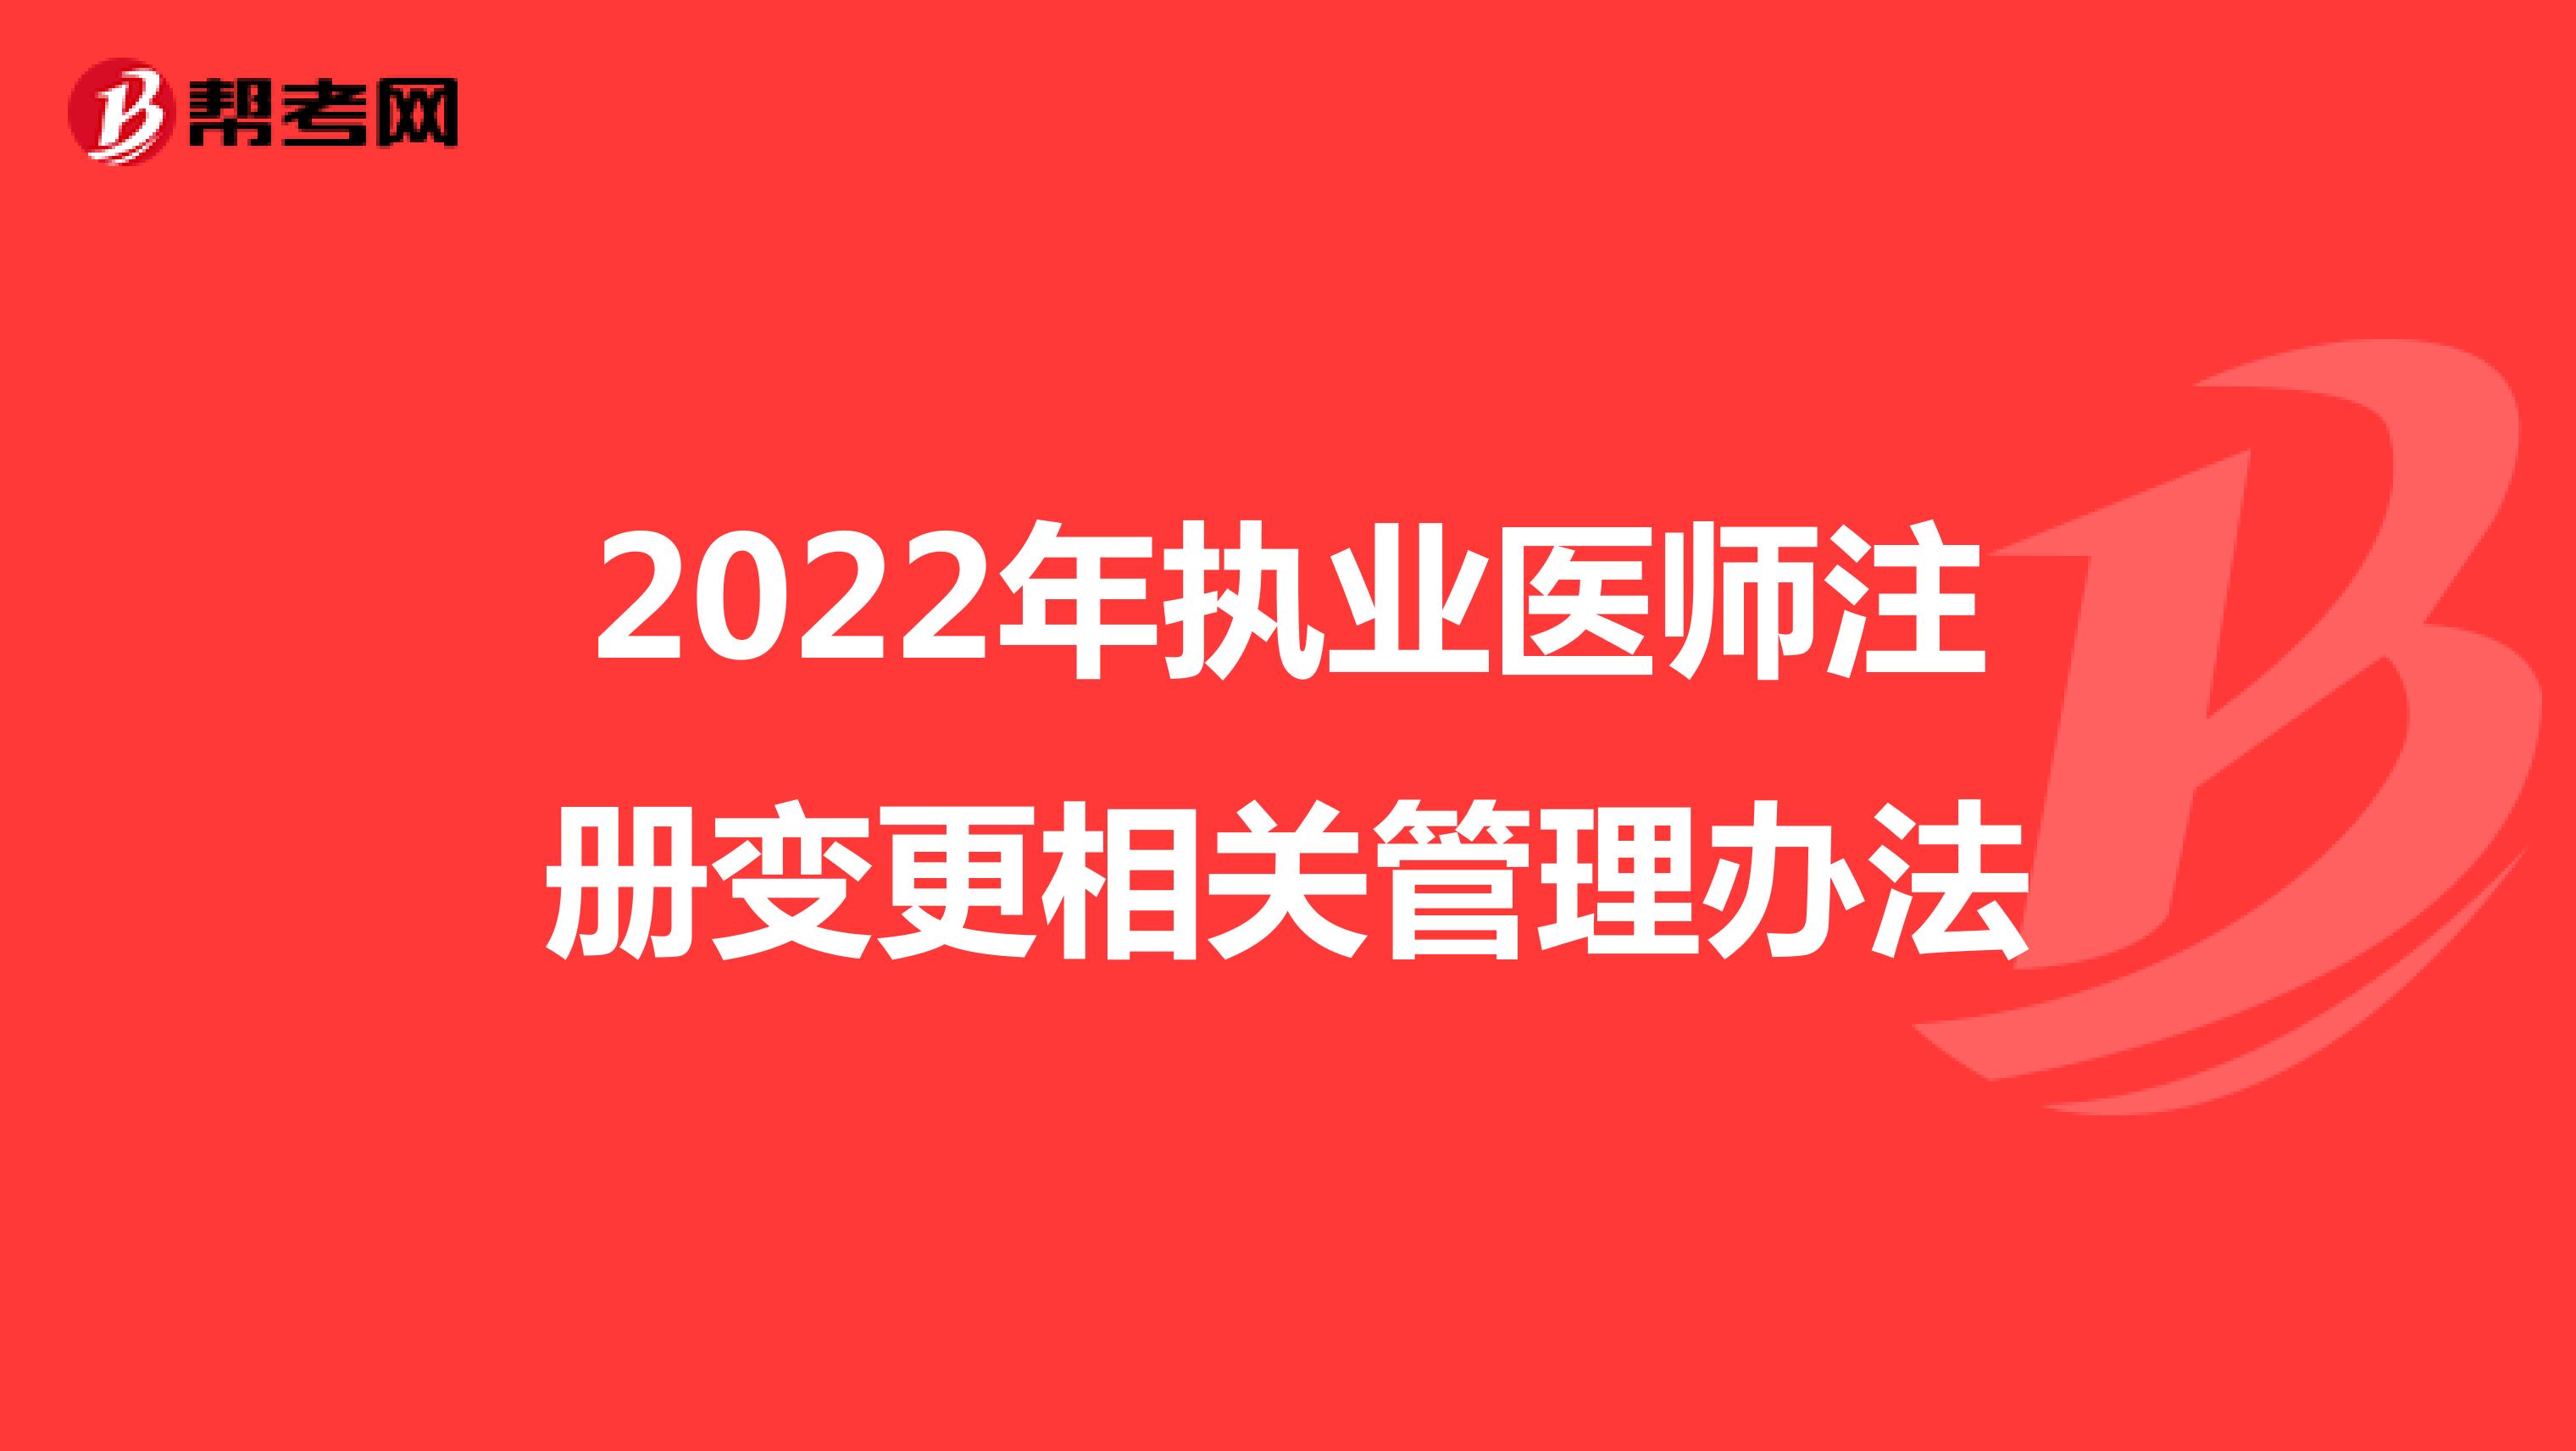 2022年执业医师注册变更相关管理办法